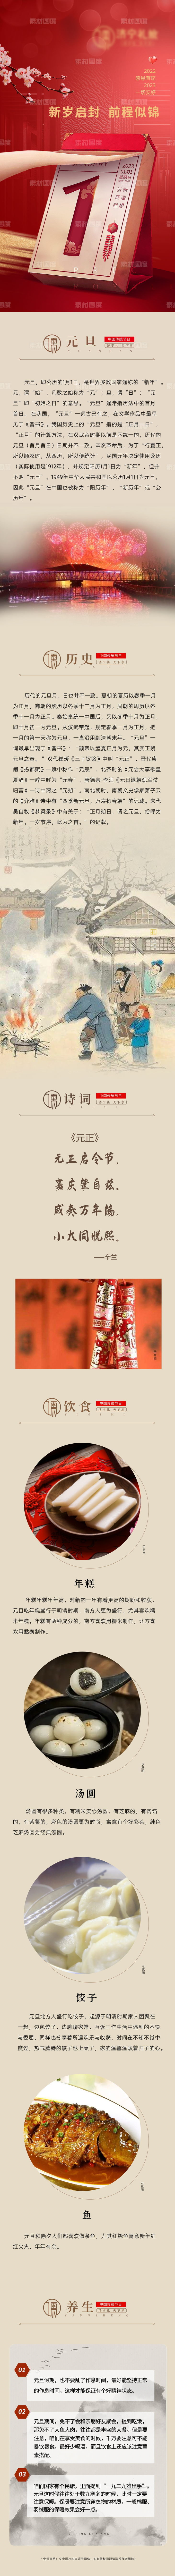 中国传统节日元旦新年微信稿长图海报